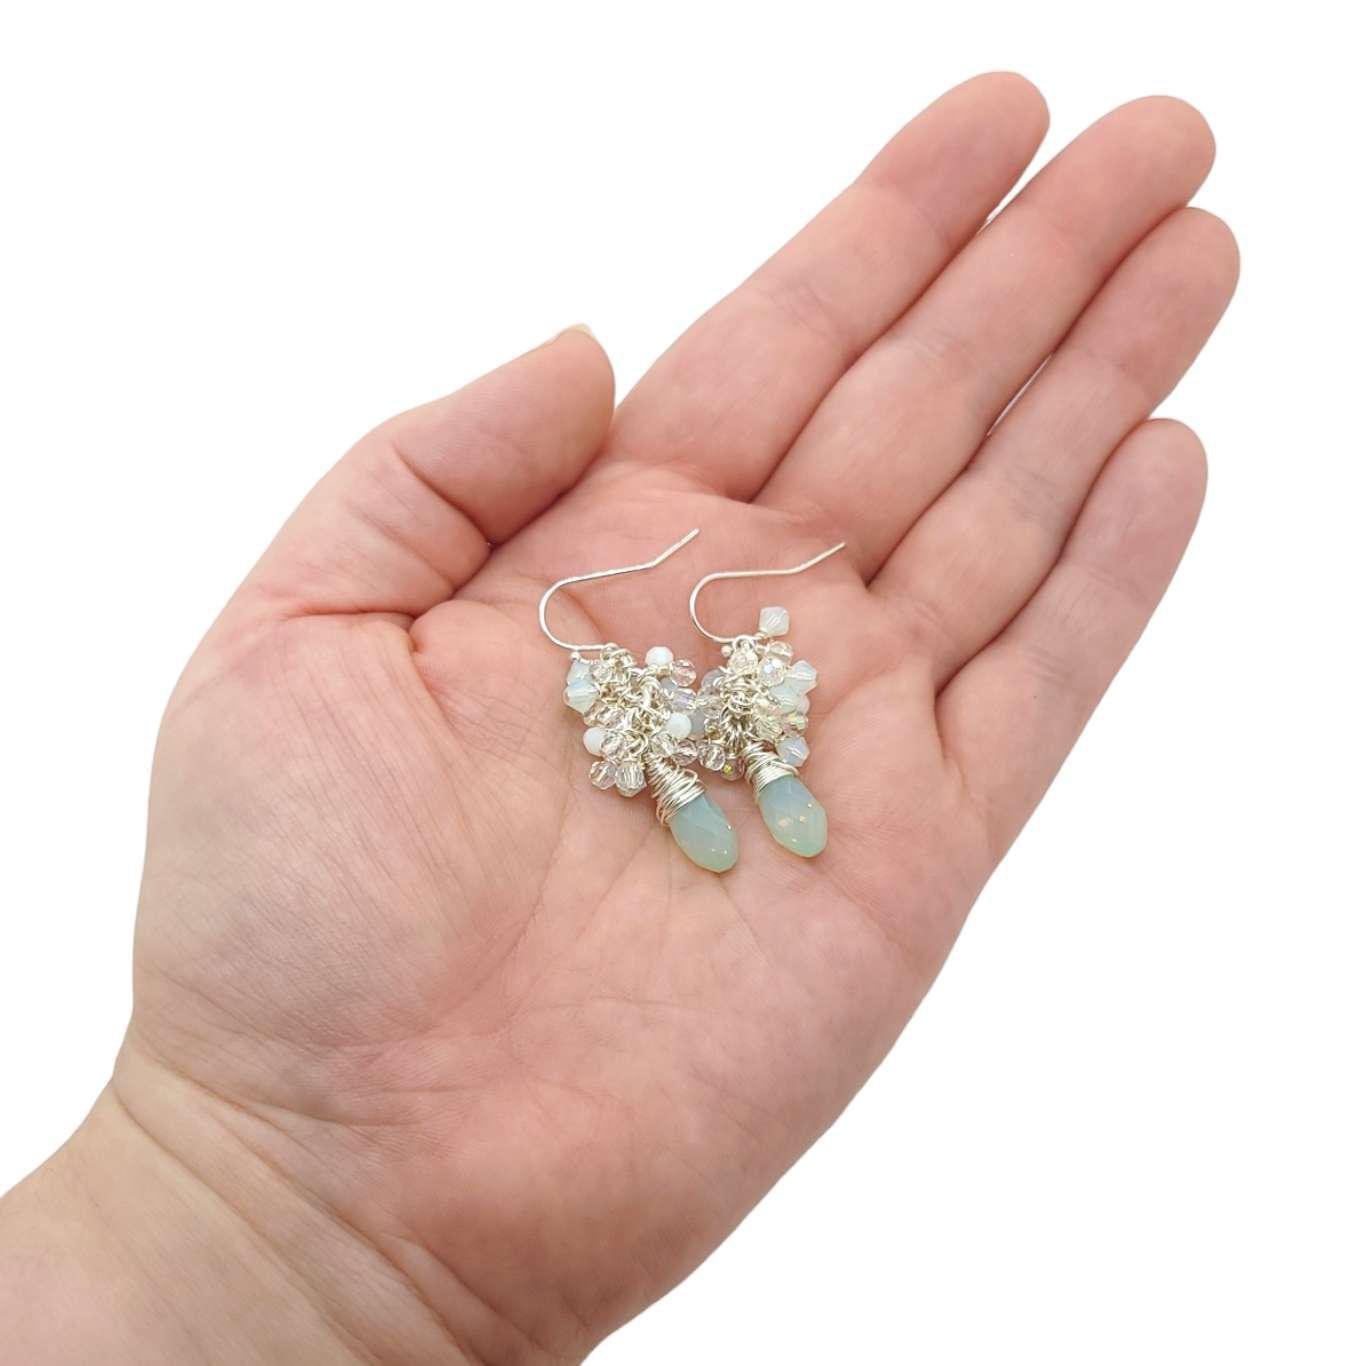 Earrings - Chrysolite Opal Crystal Teardrop Clusters by Sugar Sidewalk